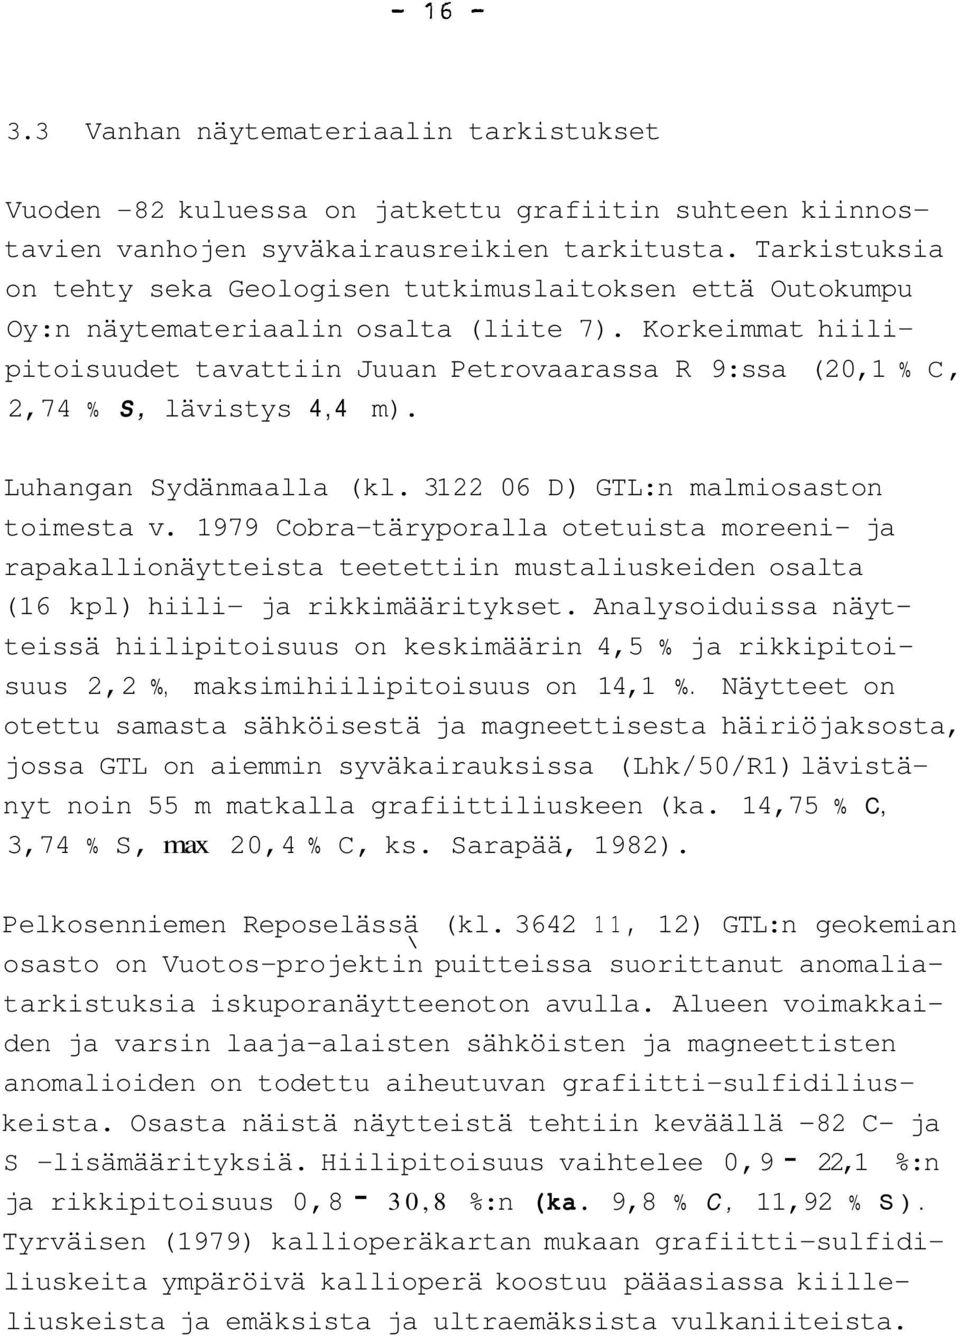 Korkmmat hiili- pitoisuudet tavattiin Juuan Petrovaarassa R 9:ssa (20,1 % C, 2,74 % S, lävistys 4,4 m). Luhangan Sydänmaalla (kl. 31 22 06 D) GTL:n malmiosaston toimesta v.